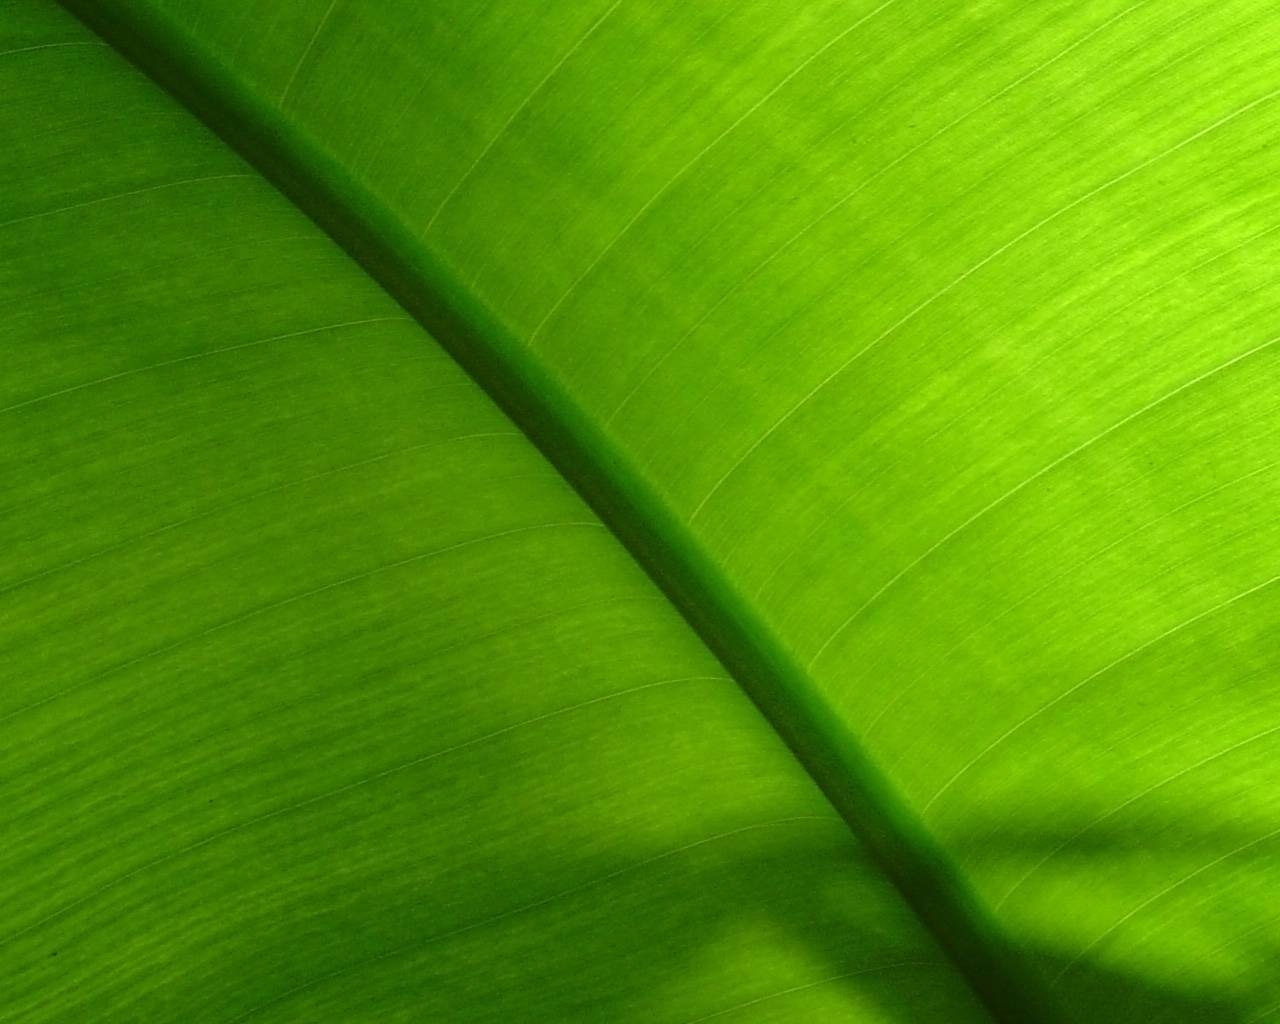 sfondi hijau,verde,foglia,foglia di banana,avvicinamento,linea